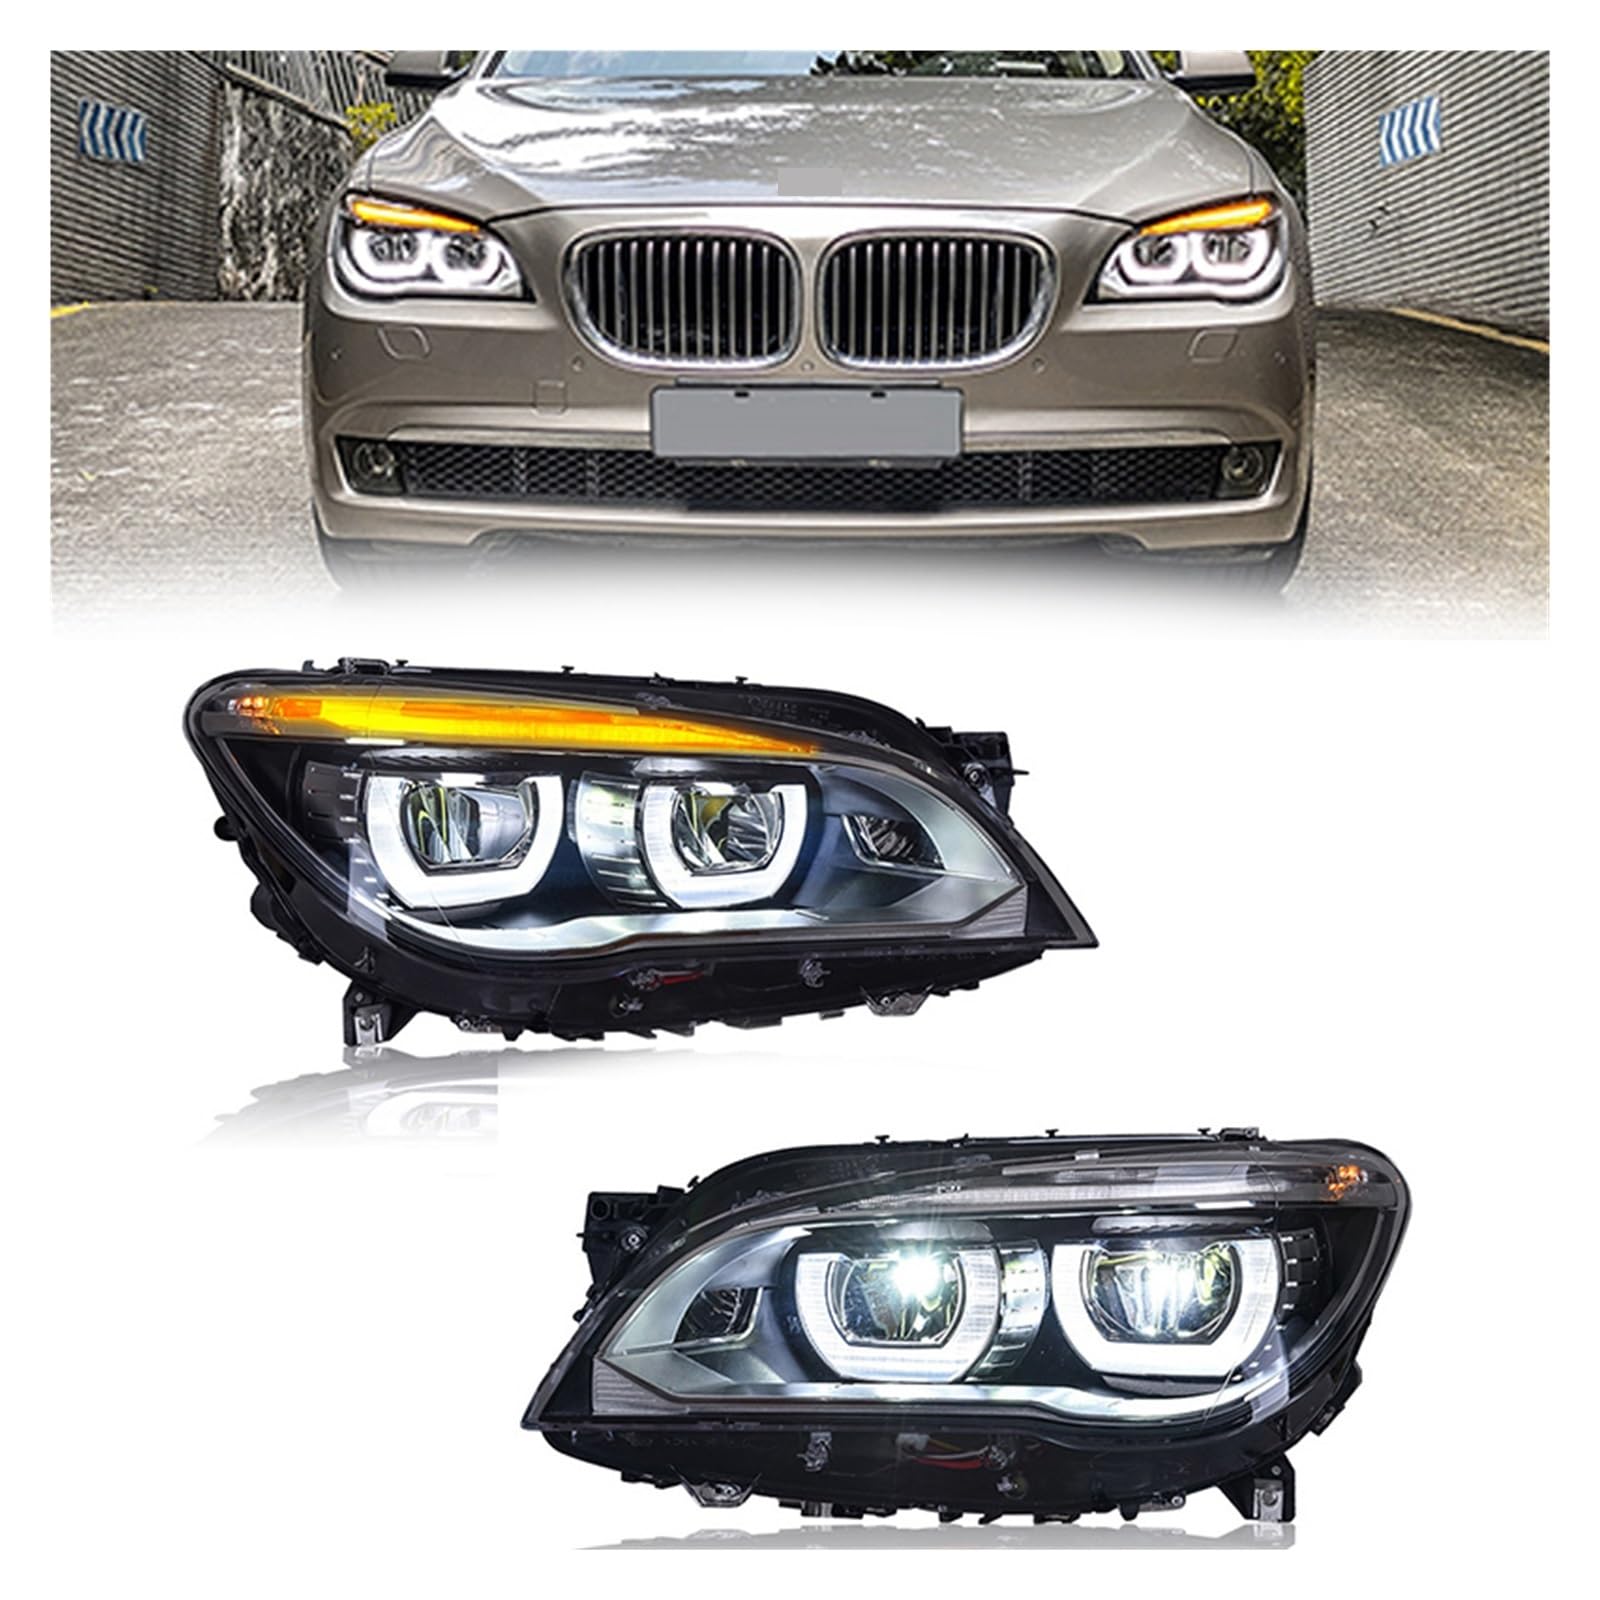 Voll LED Modifizierte Auto Front Scheinwerfer Kompatibel for BMW 7 Serie F01 F02 Scheinwerfer 2009 10 11 12-2015 730i 740i 750i 760i Auto Zubehör(2009-2013 Year) von LIINYTG